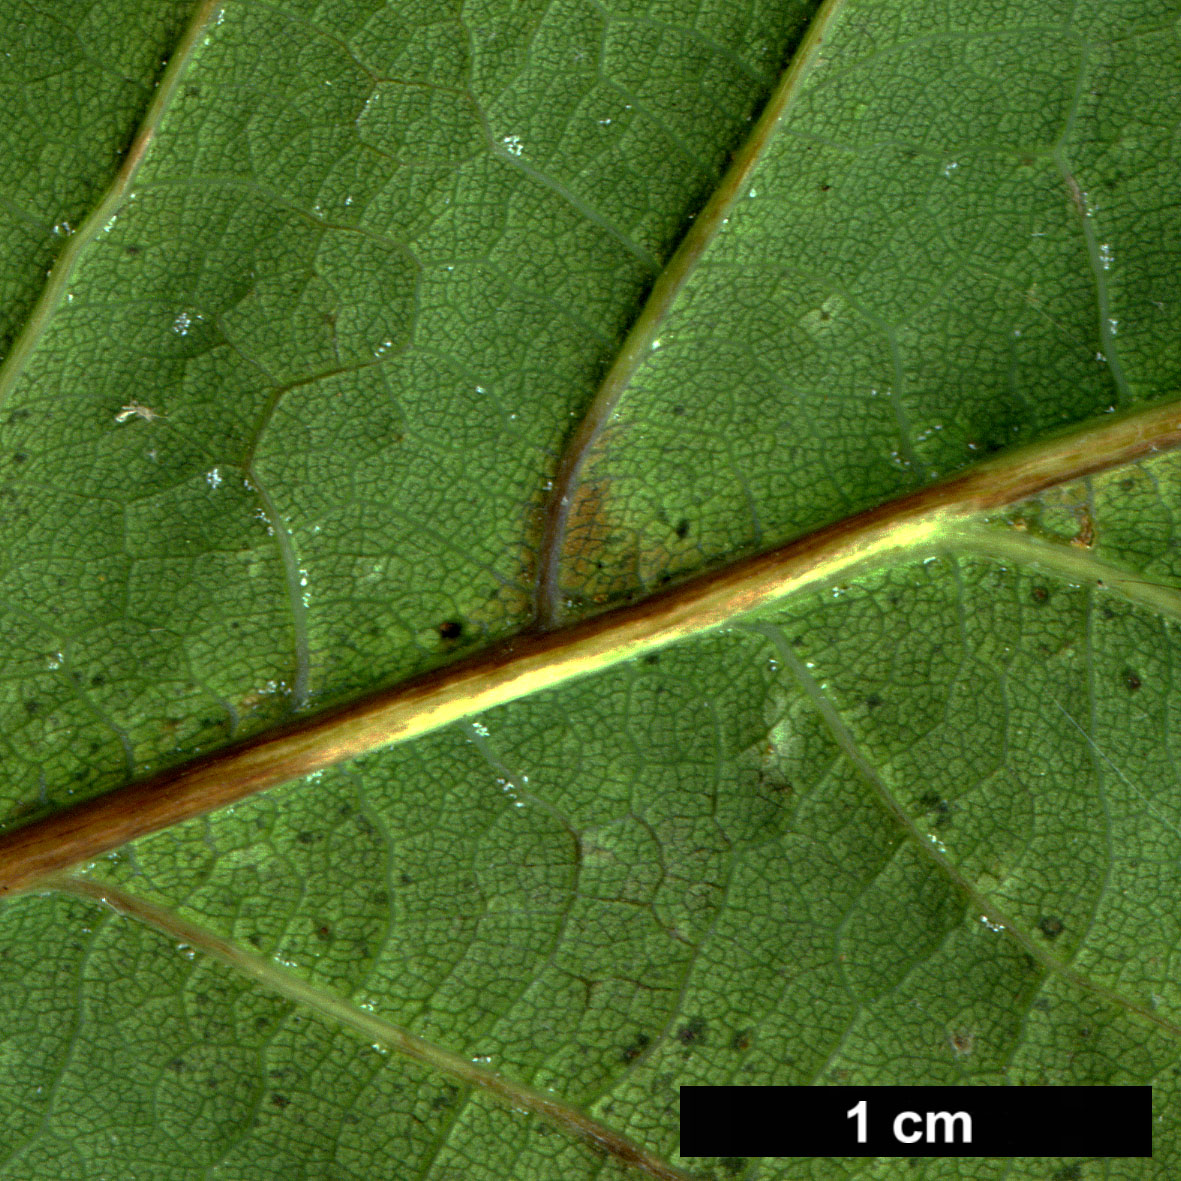 High resolution image: Family: Fagaceae - Genus: Quercus - Taxon: ×rosacea - SpeciesSub: 'Columna' (Q.petrea × Q.robur)